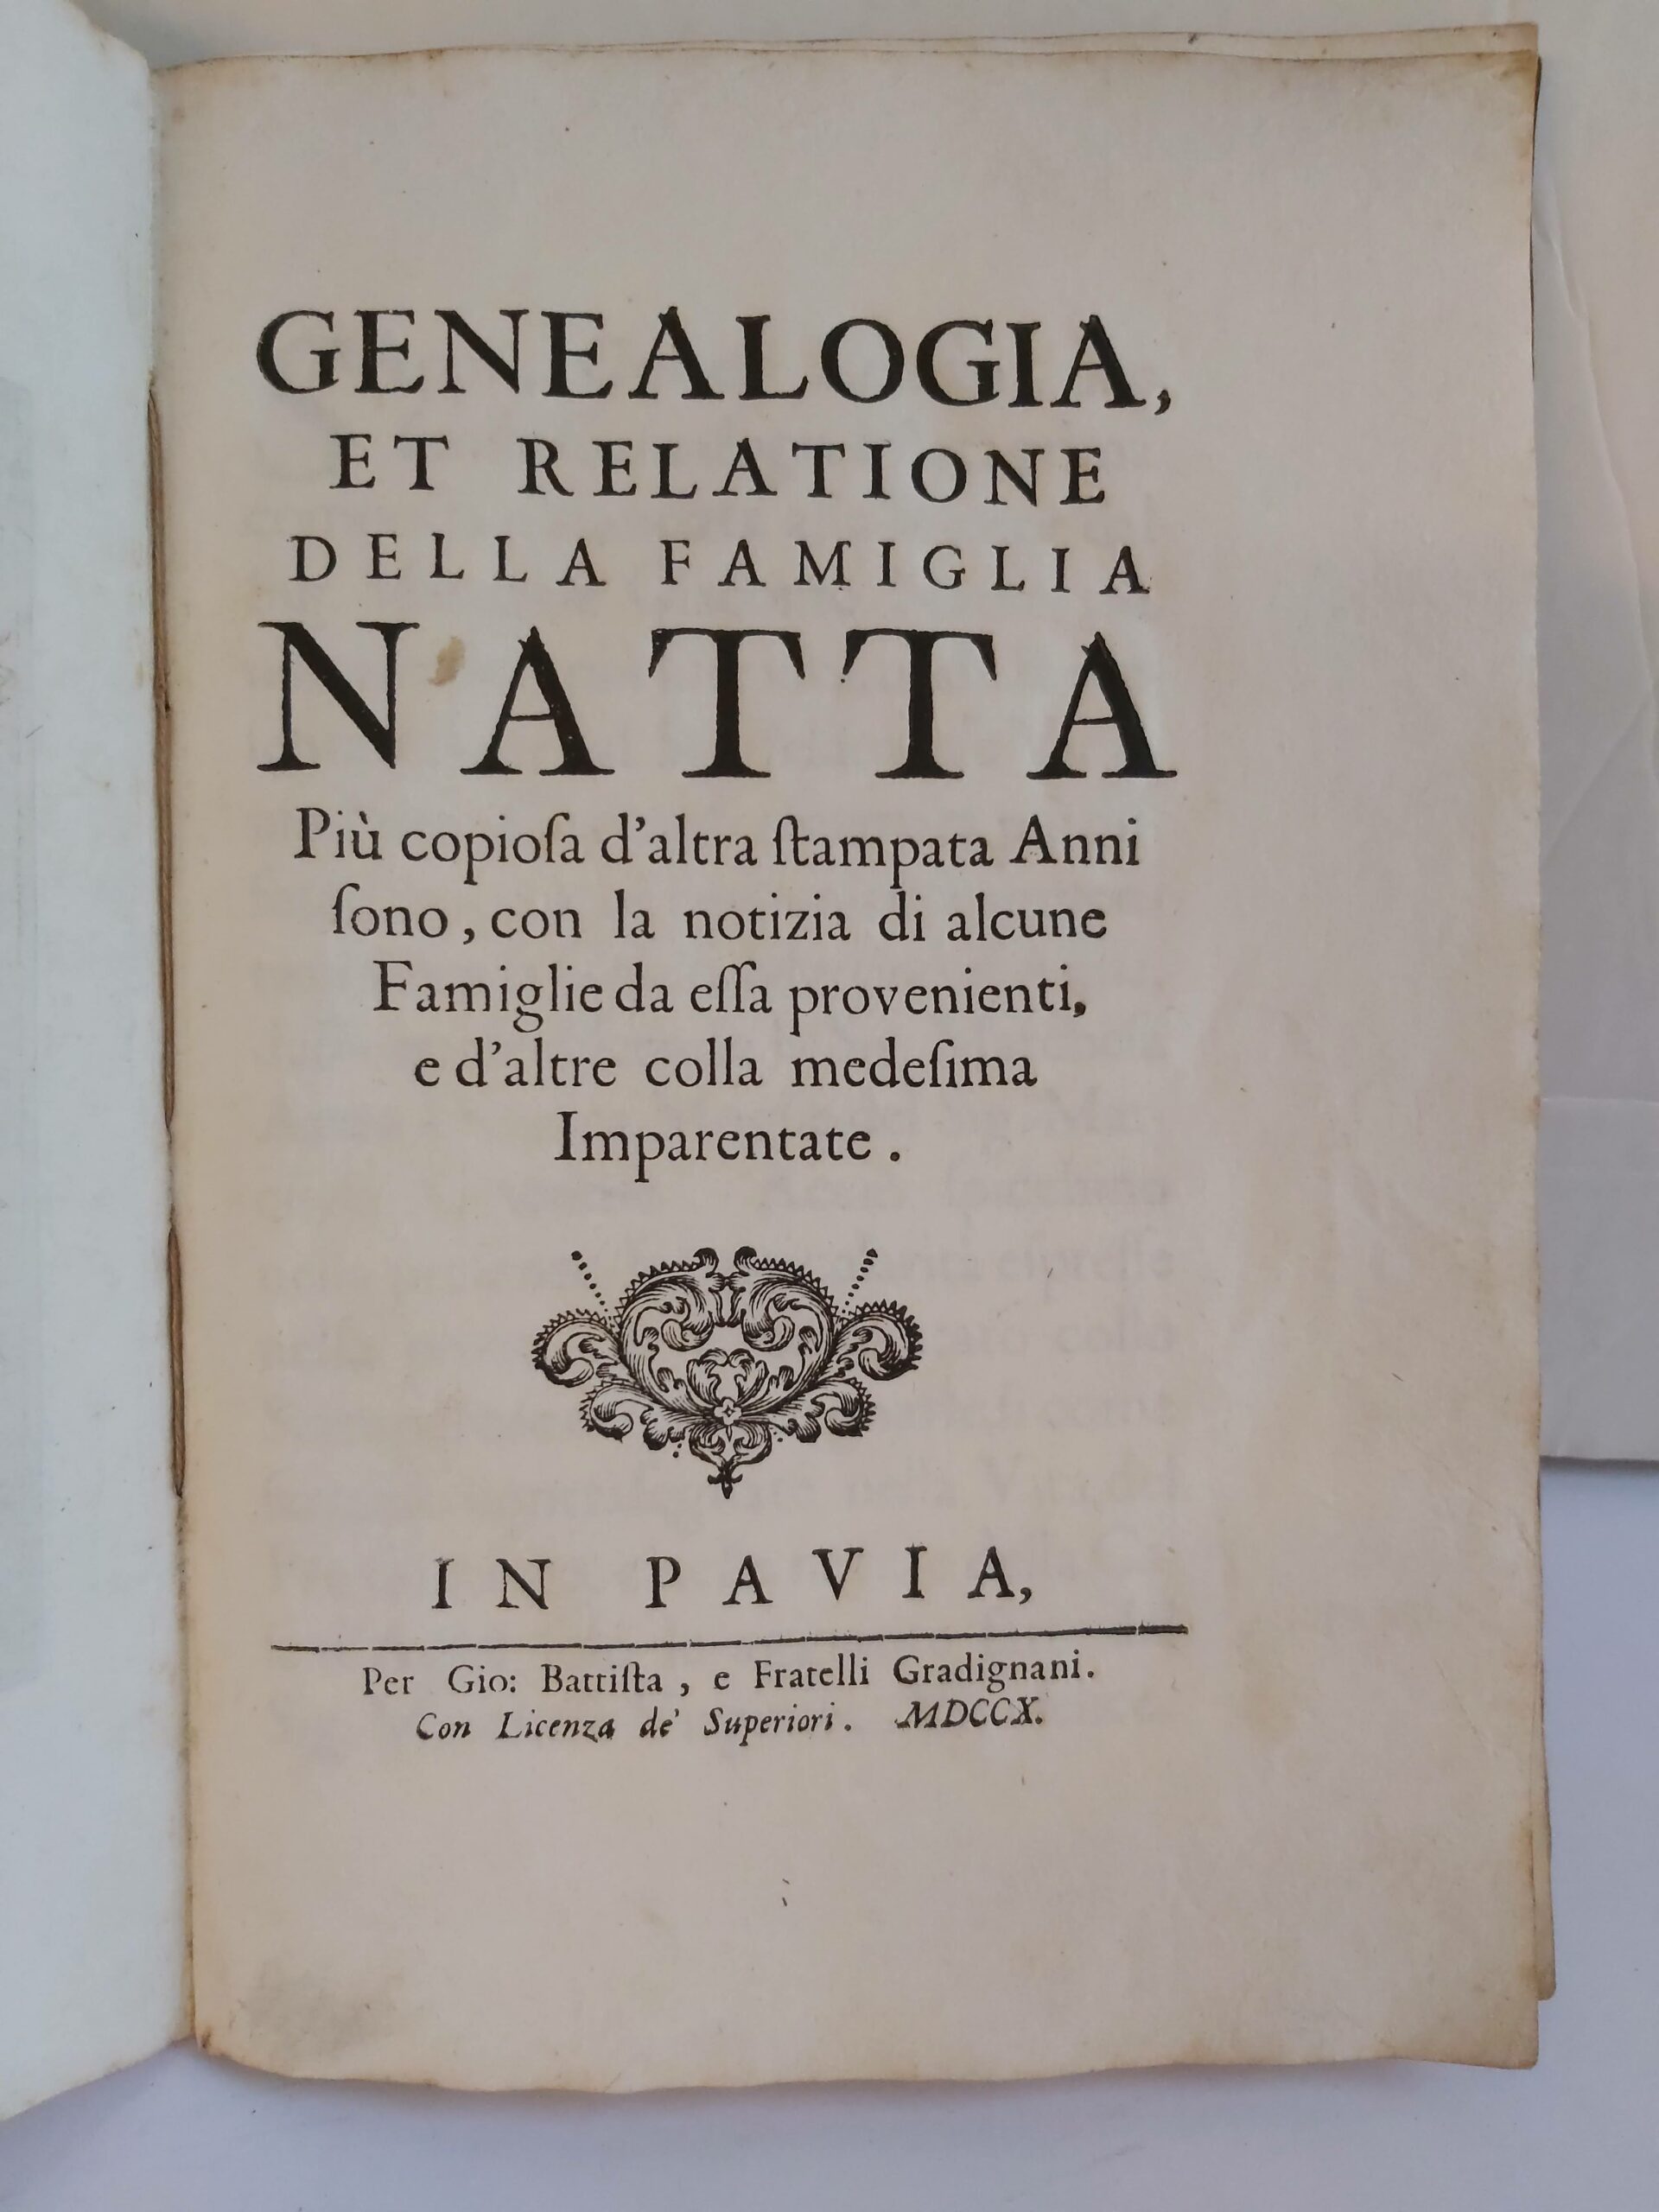 LOC17-364 Natta Genealogia (5)